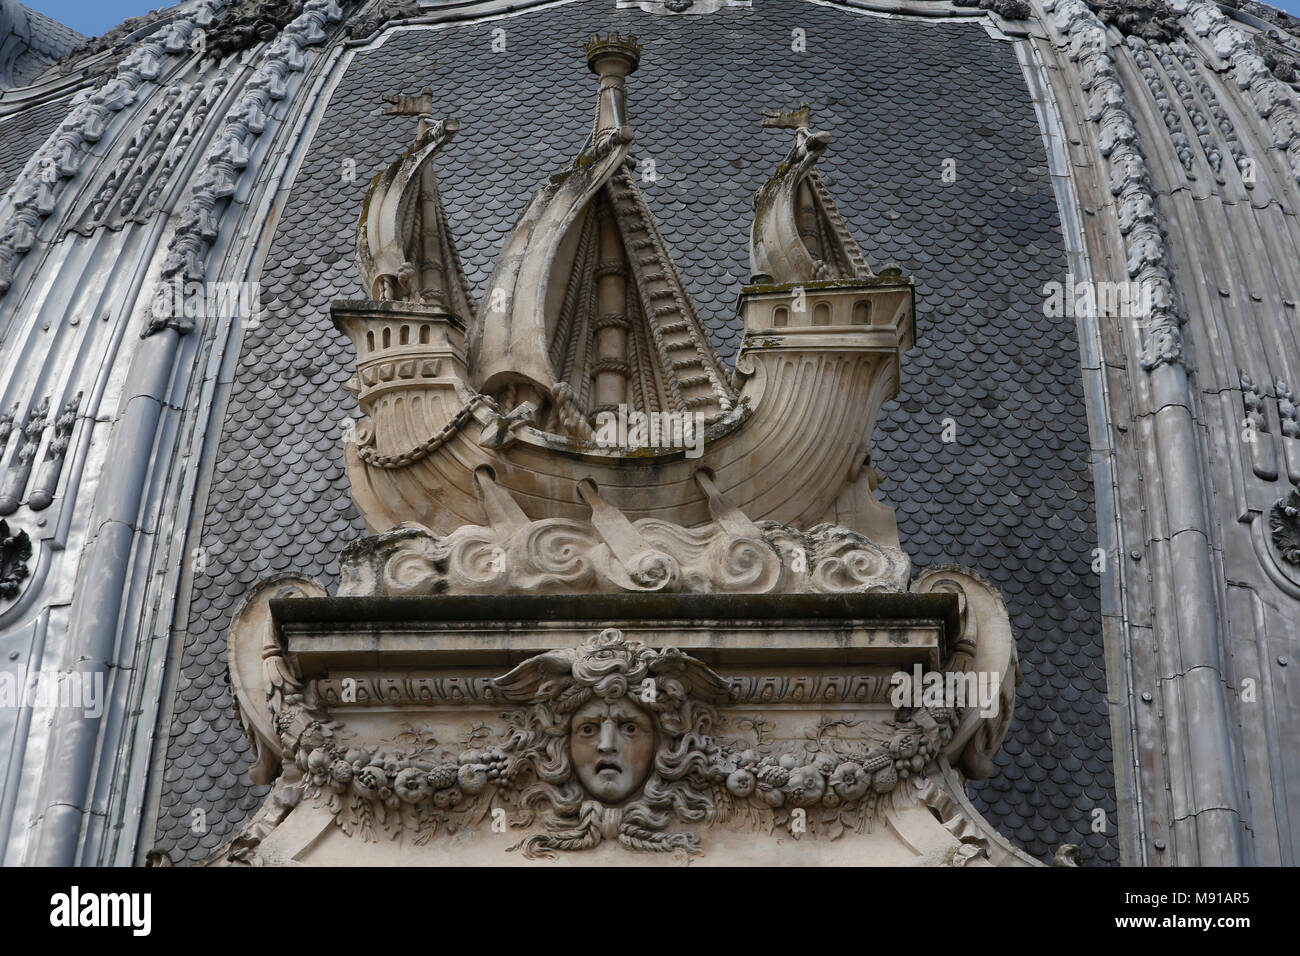 Petit Palais museum, Paris, France. Boat symbolizing the city of Paris. Stock Photo